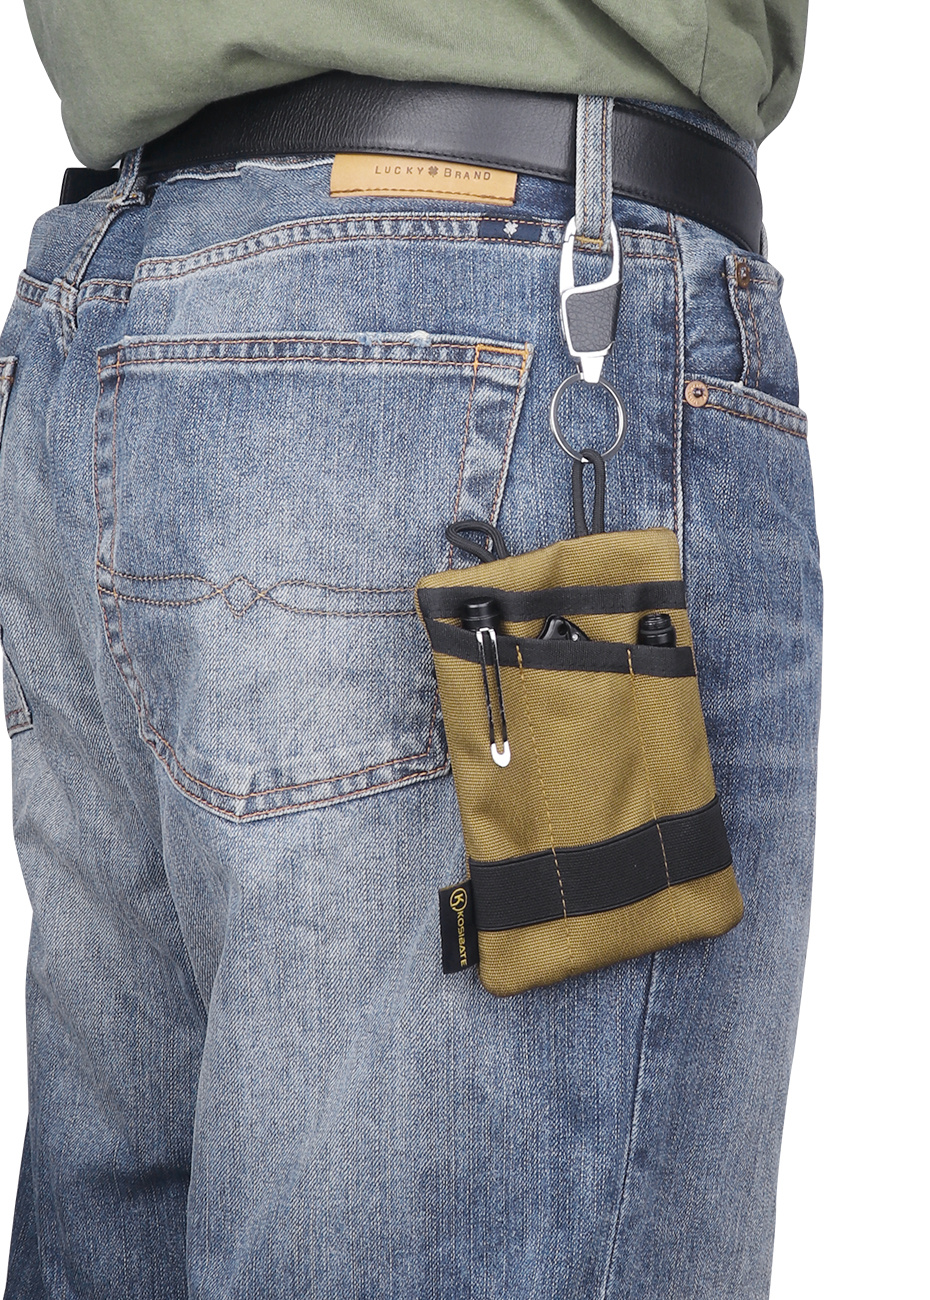 Taschen-Organizer, edc-Tasche zum Tragen von taktischem Stift / Messer /  Telefon, EDC-Werkzeugtasche für Männer mit 4 Taschen  Werkzeugaufbewahrungs-EDC-Tasche, Nylongürtel-Utility-Organizer